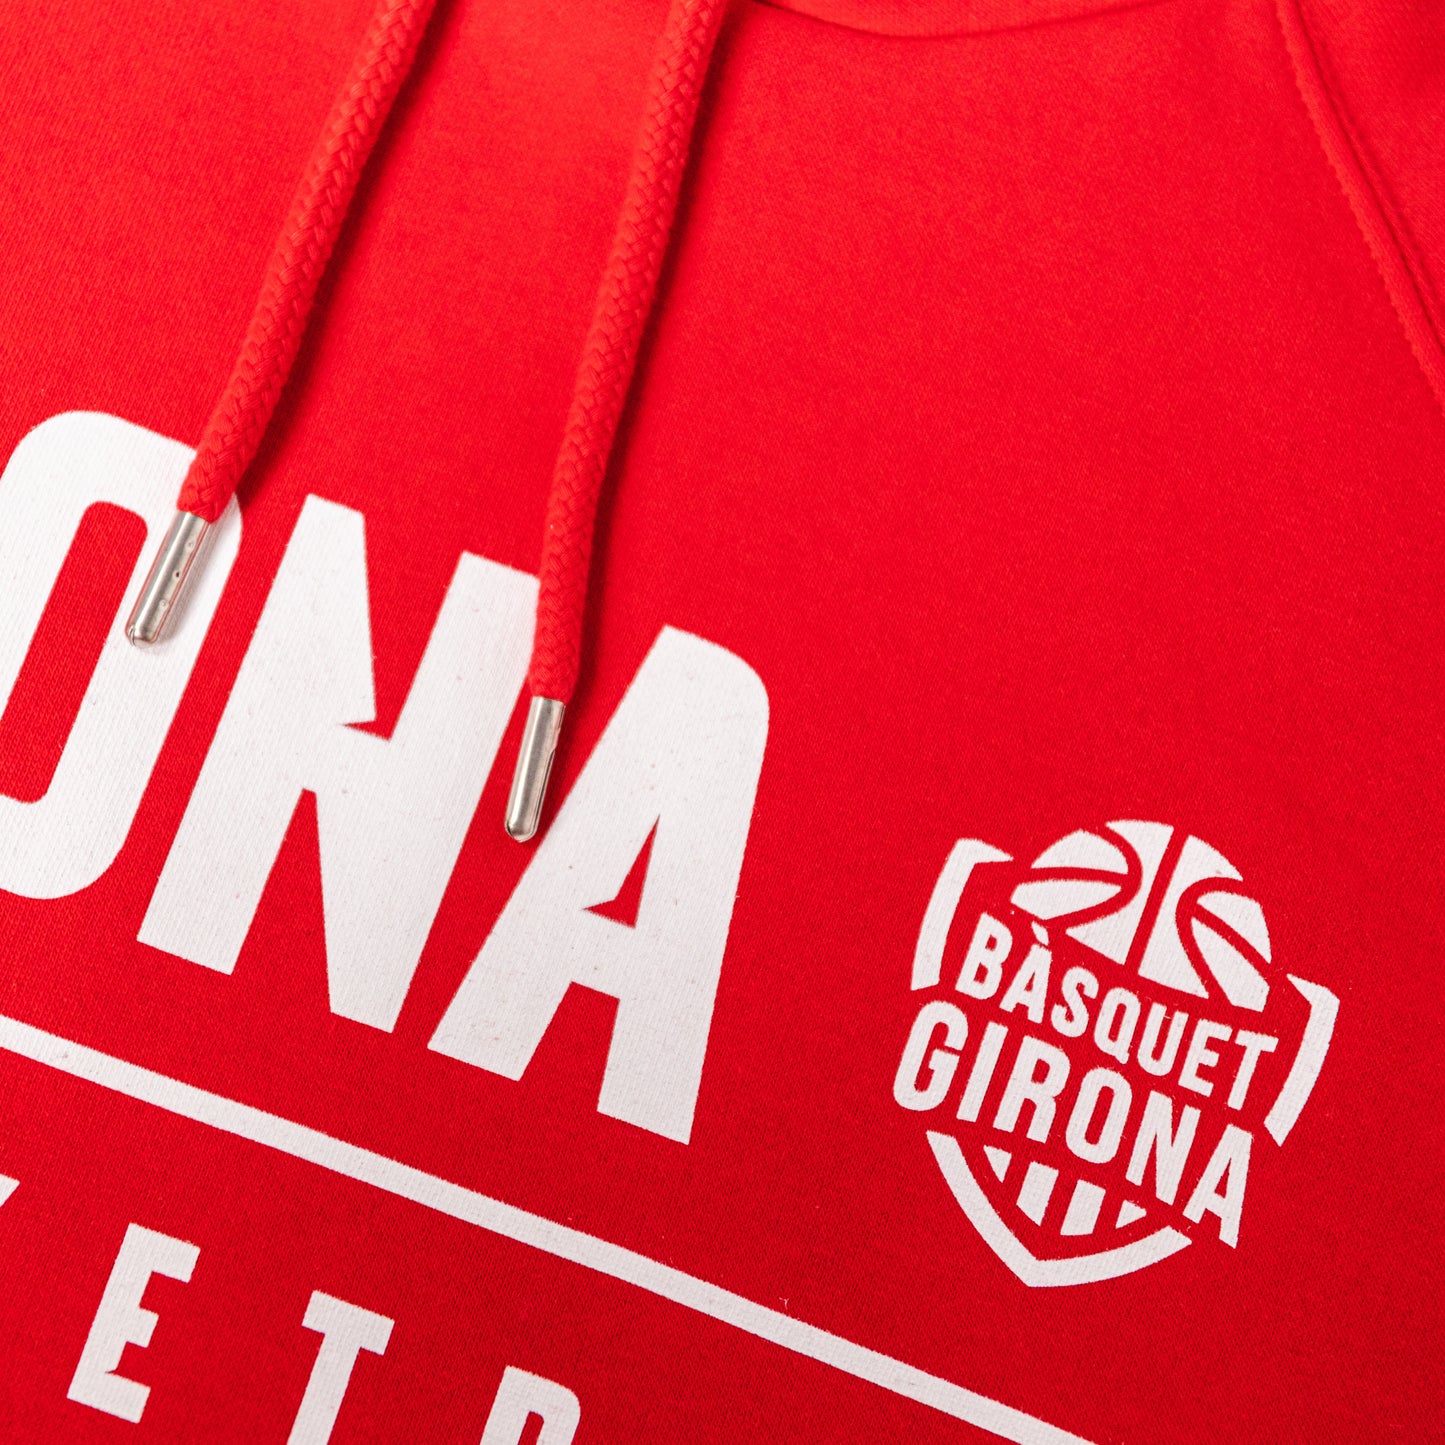 Girona Basketball Sweatshirt Red 22/23 Adult